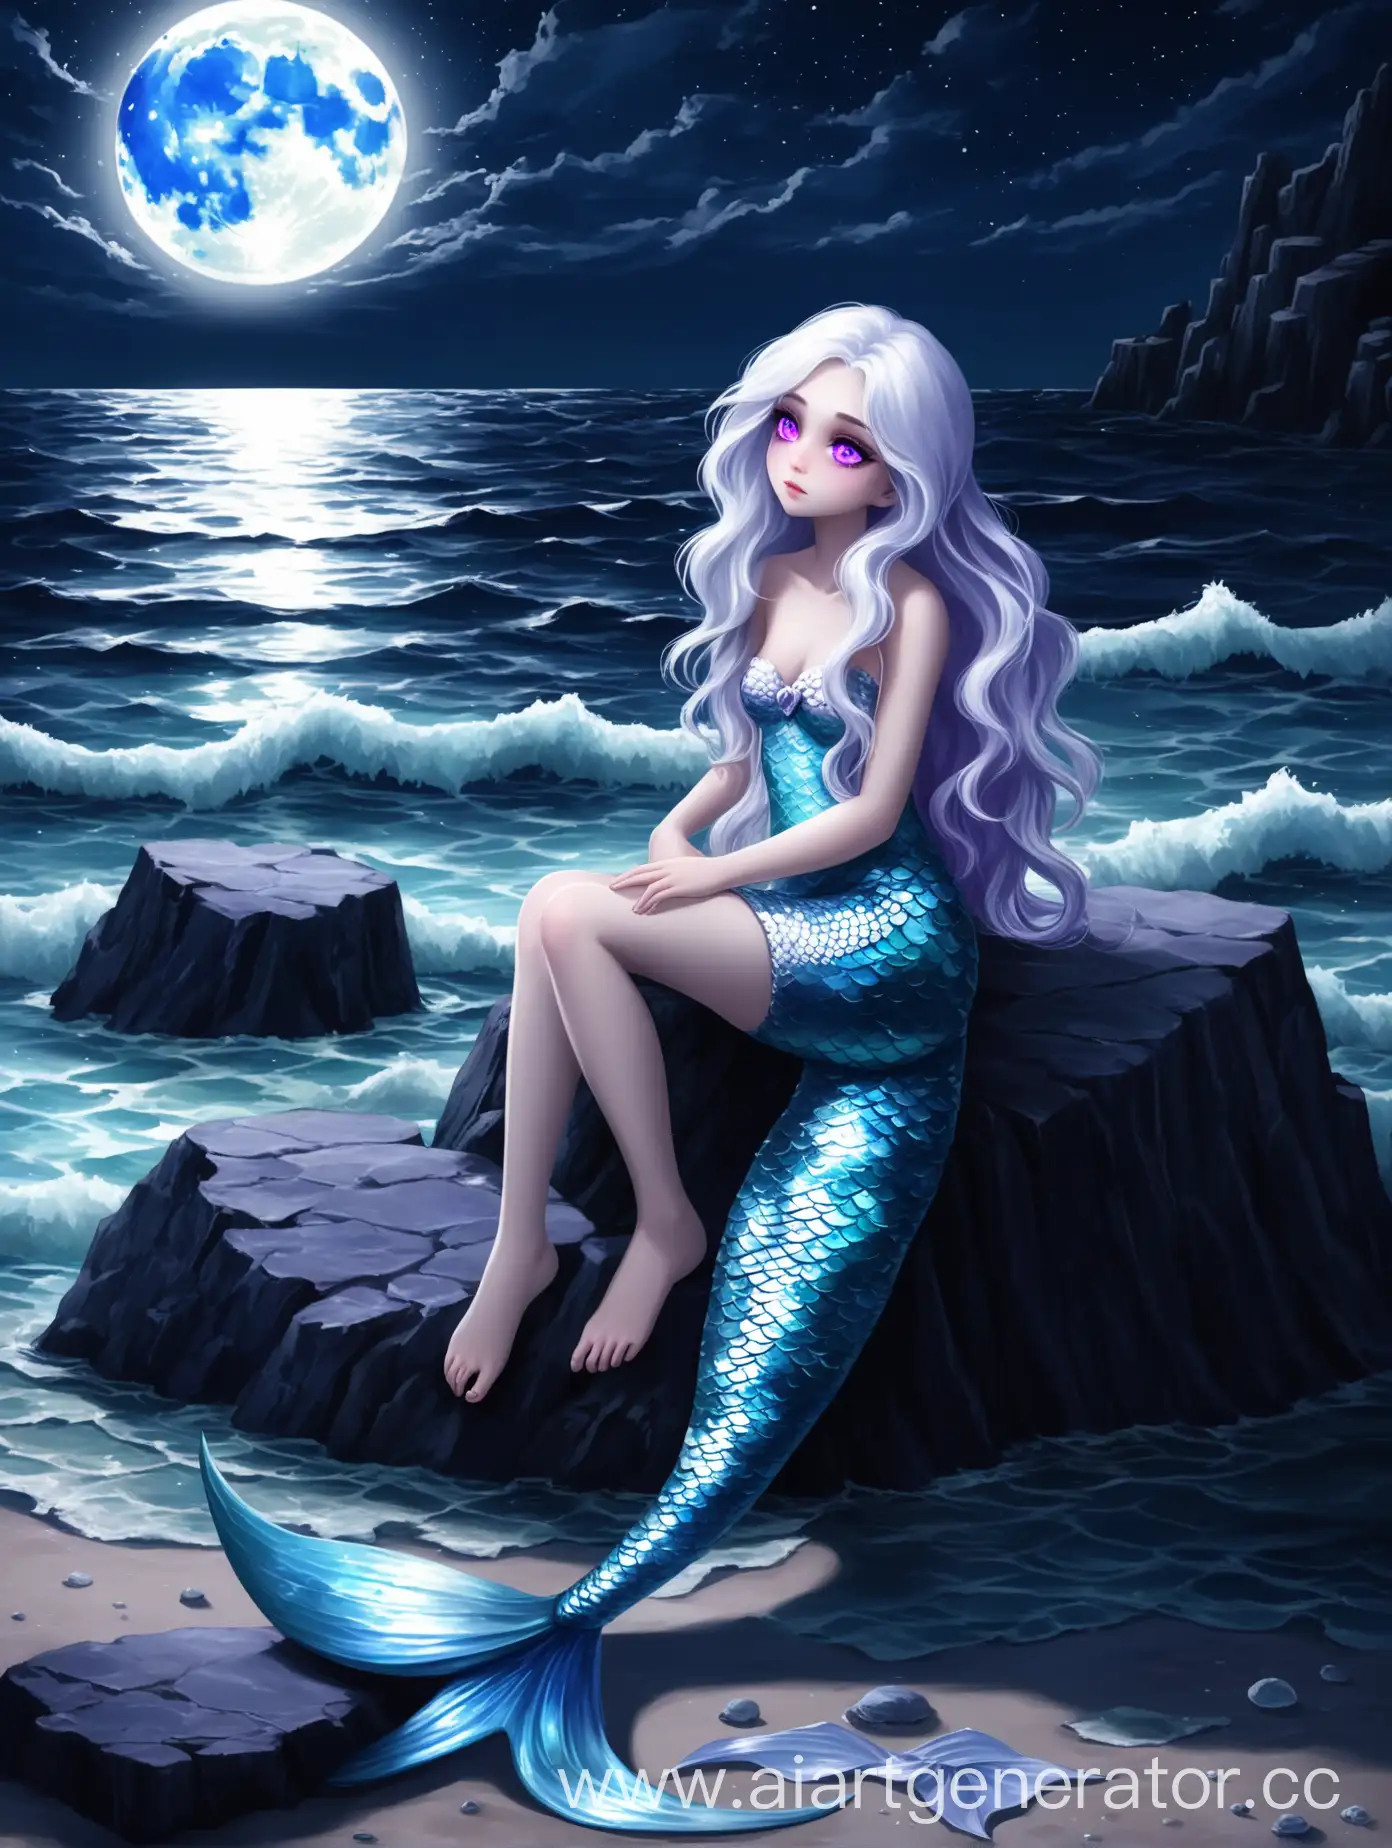 Девушка с острыми чертами лица, глаза фиолетовые наполненные жаждой мести, волосы волнистые серебряные или белые, она русалка, хвост очень красивый переливается в лучах луны, она сиди на камне, вокруг море, лунная ночь